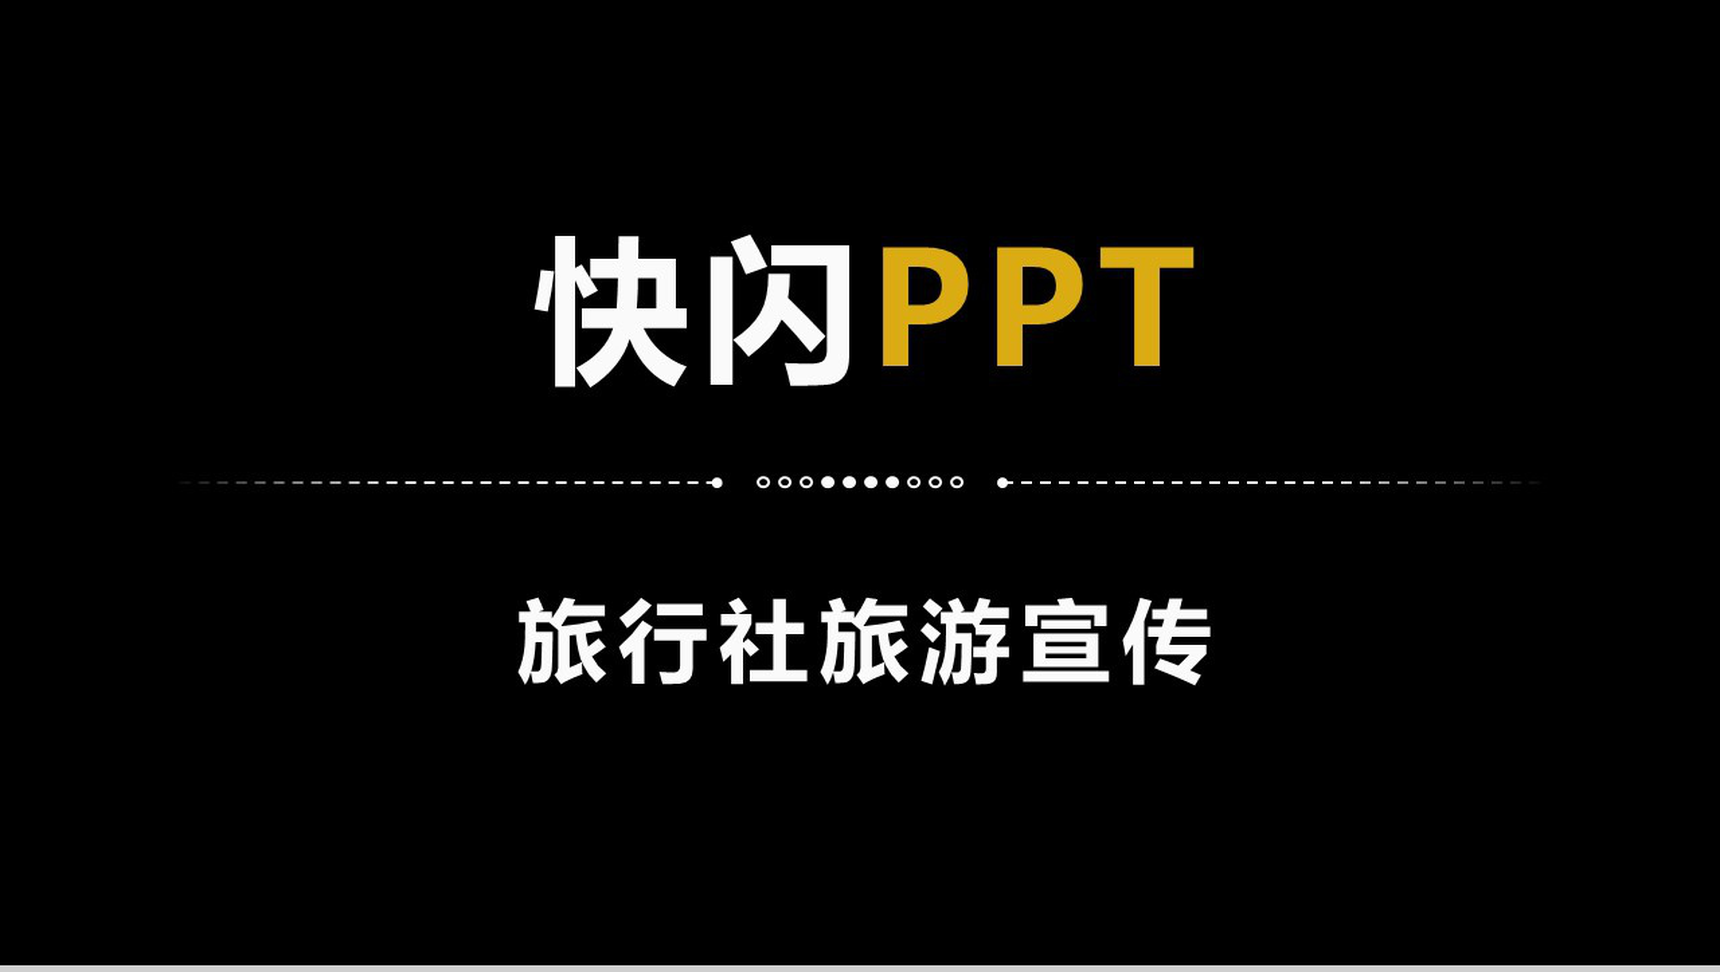 简约商务大气旅行社旅游宣传介绍快闪PPT模板-1